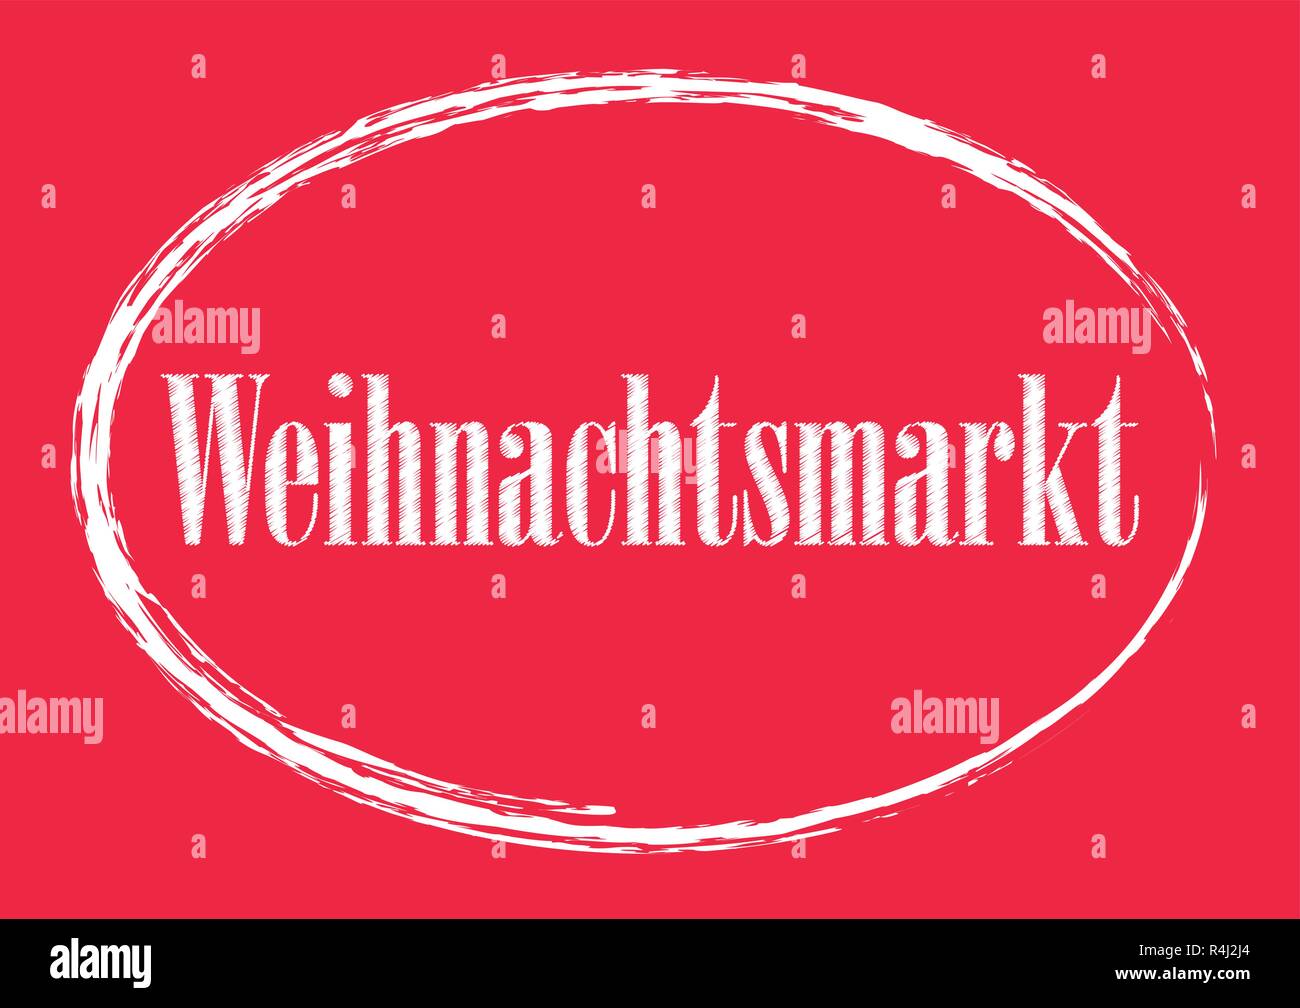 Weihnachtsmarkt - Fiera di Natale in tedesco scritte poster vintage scheda tipografia Illustrazione Vettoriale